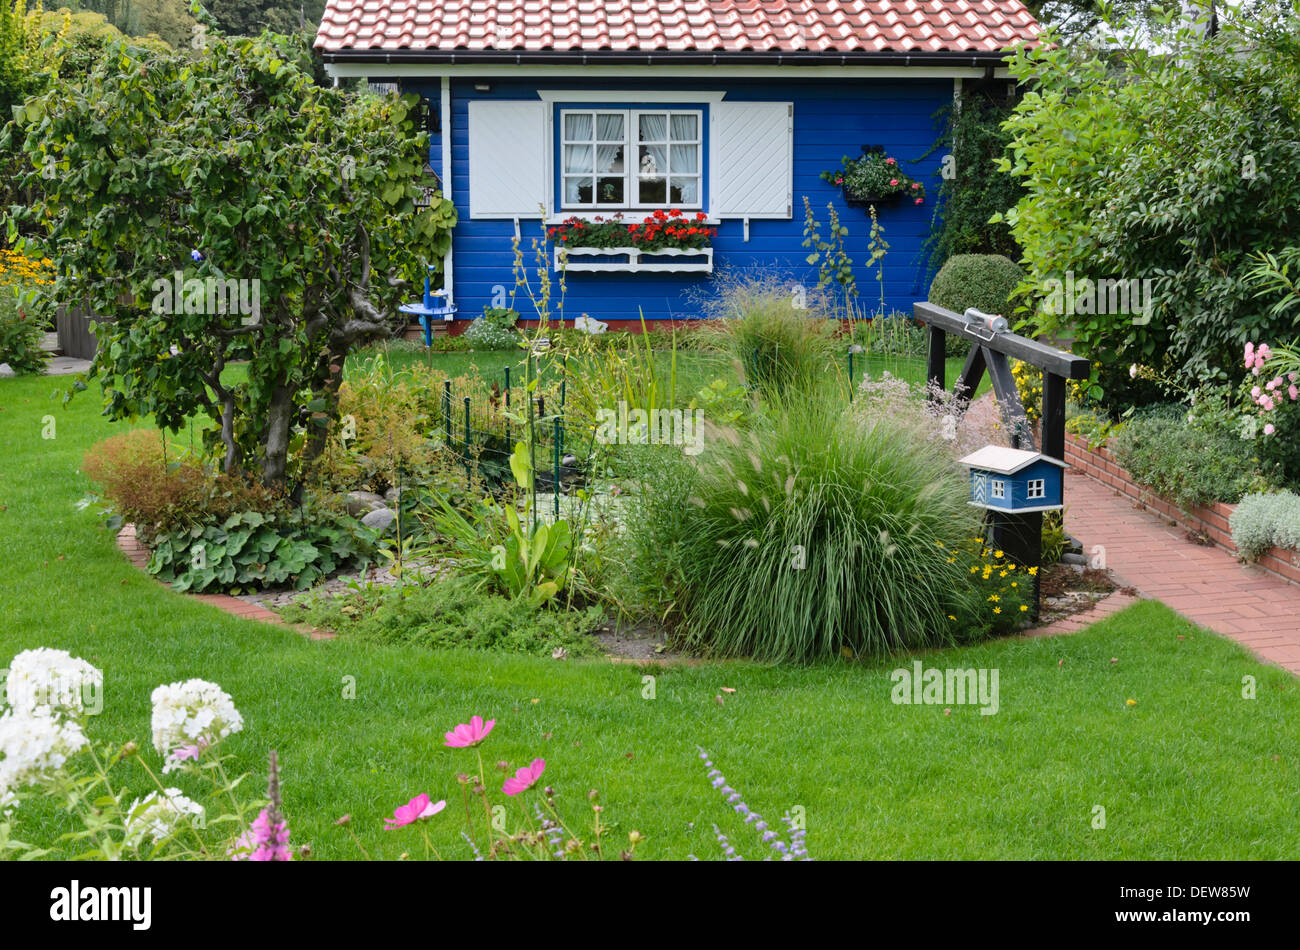 Jardin avec allotissement blue garden house Banque D'Images